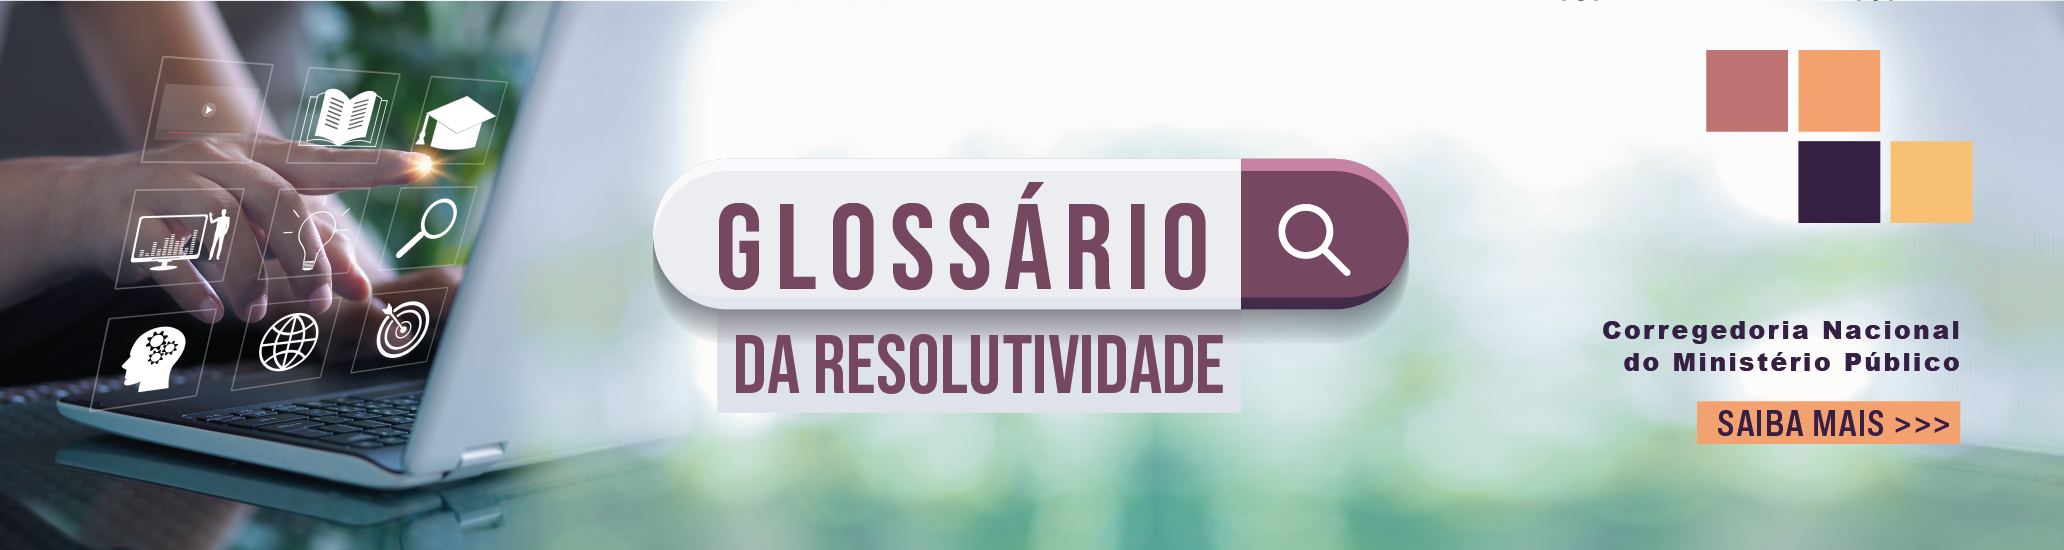 Glossrio-da-Resolutividade---Corregedoria-_Banner-web-finalizado.png - 934,09 kB